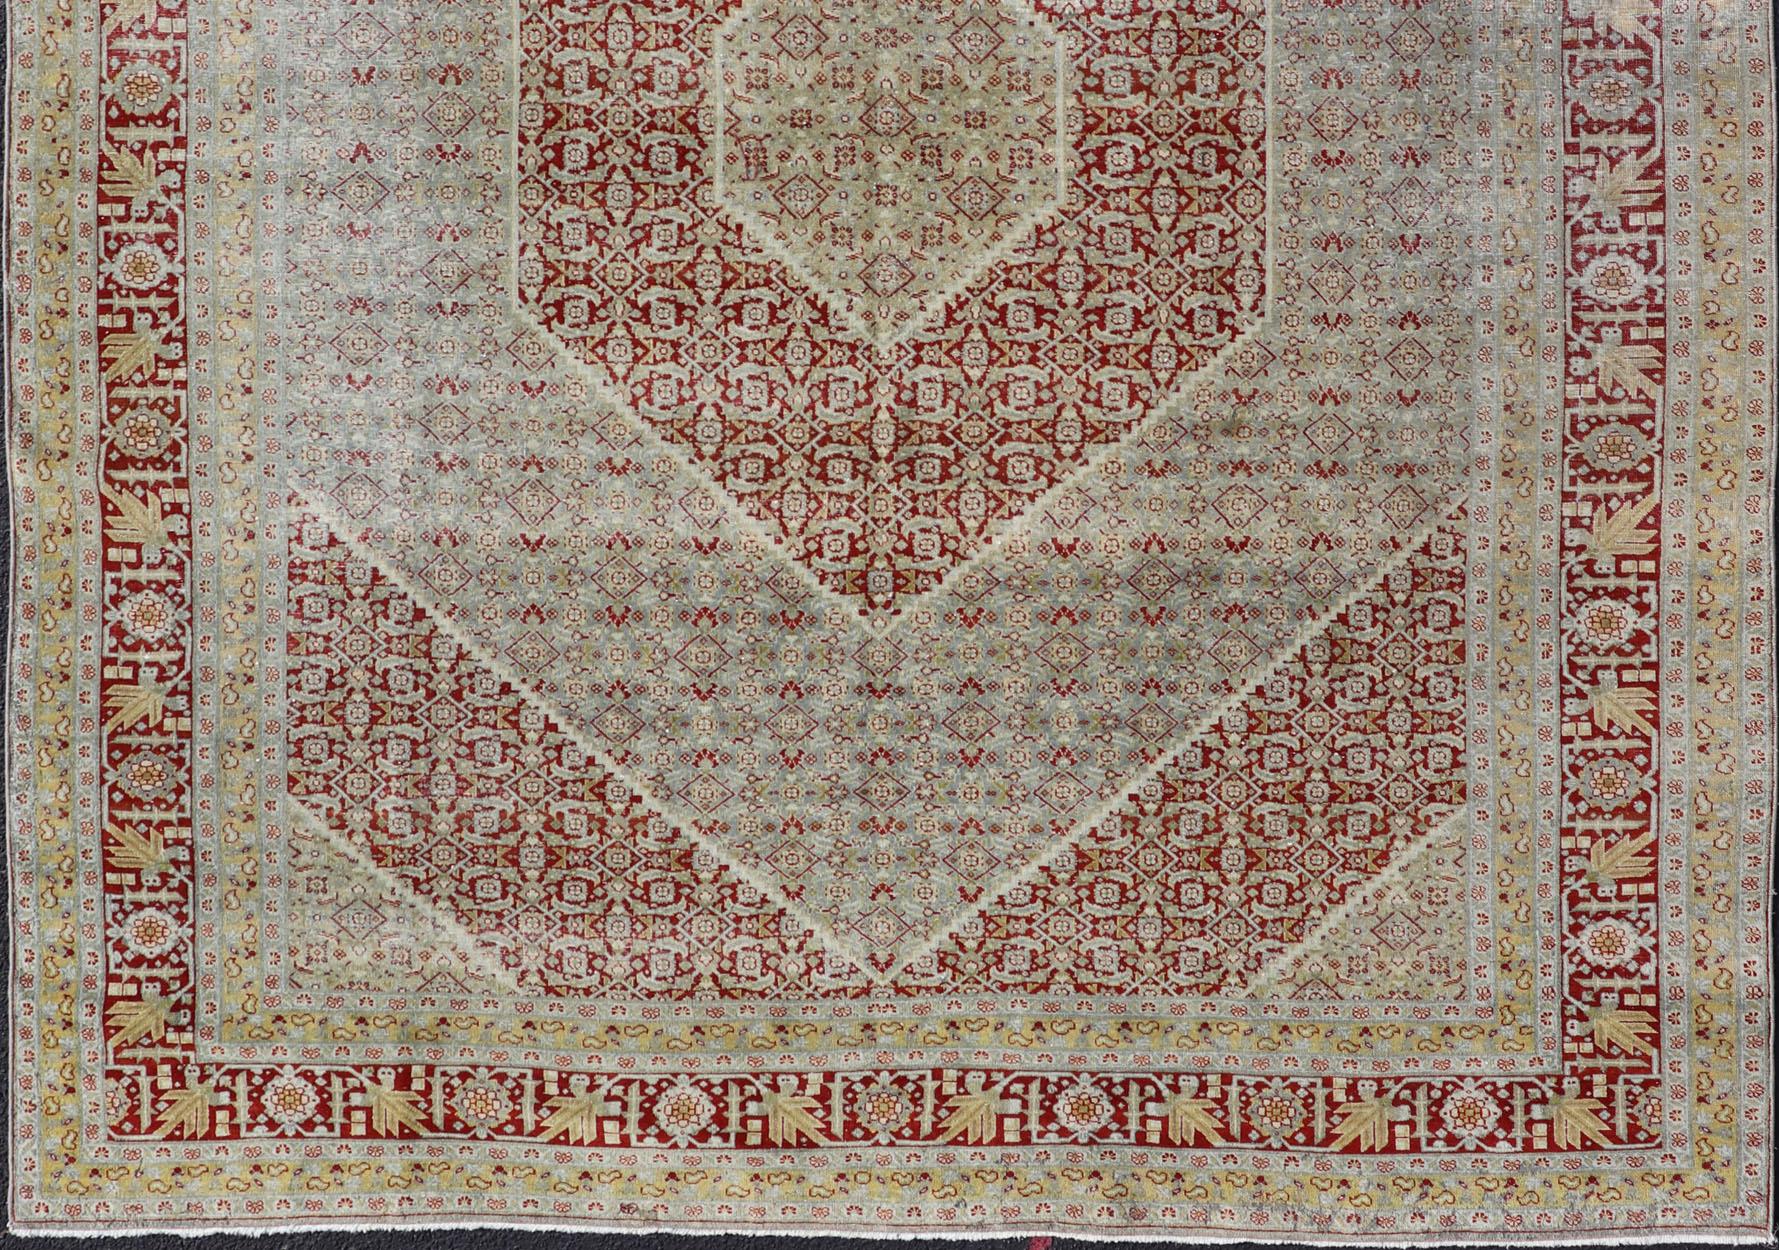 Magnifique tapis rouge, vert tendre, beige, bleu clair, gris, jaune. Tapis persan géométrique de Tabriz, tapis R20-0722, pays d'origine / type : Iran / Tabriz, vers 1920.

Ce tapis ancien de Tabriz, datant de la Perse des années 1920, présente un